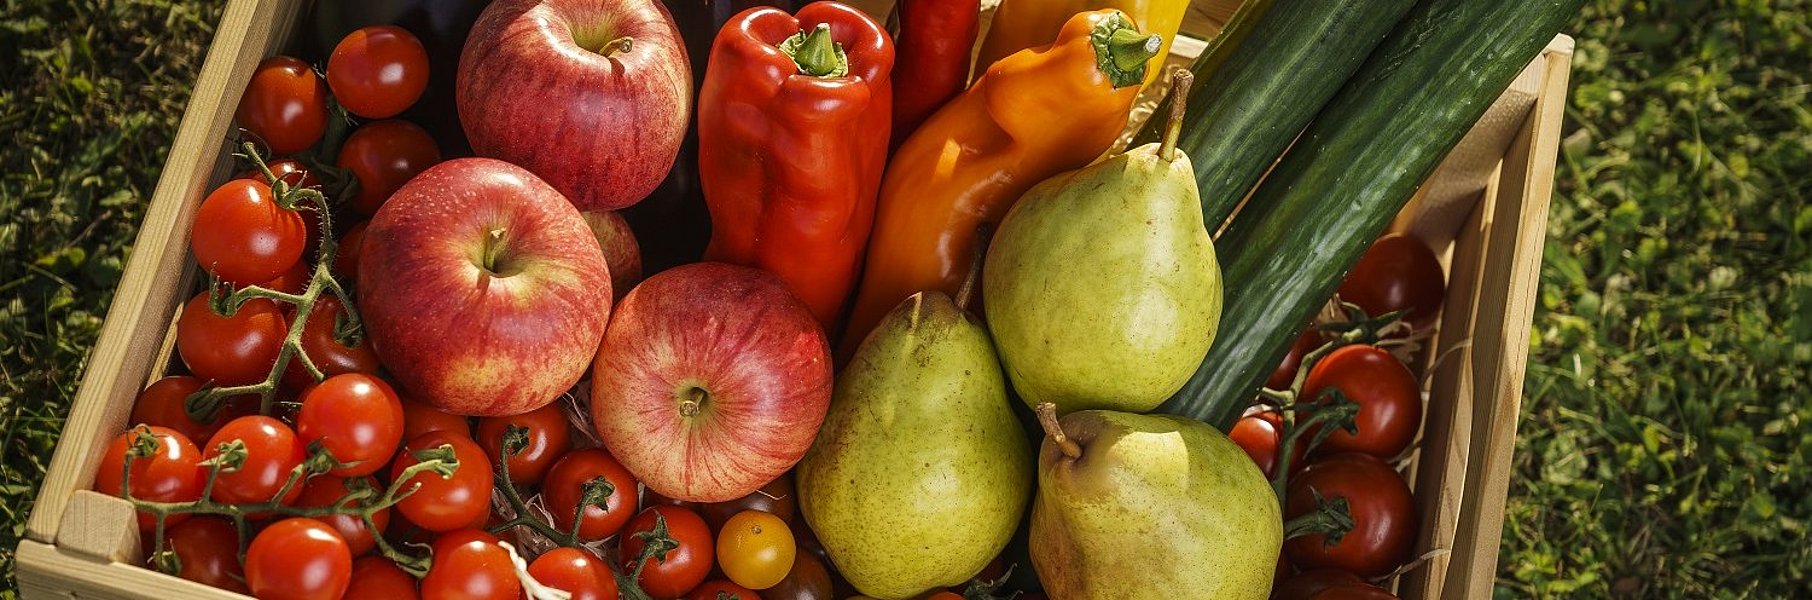 Bunte Obst- und Gemüsekiste von der Frutura